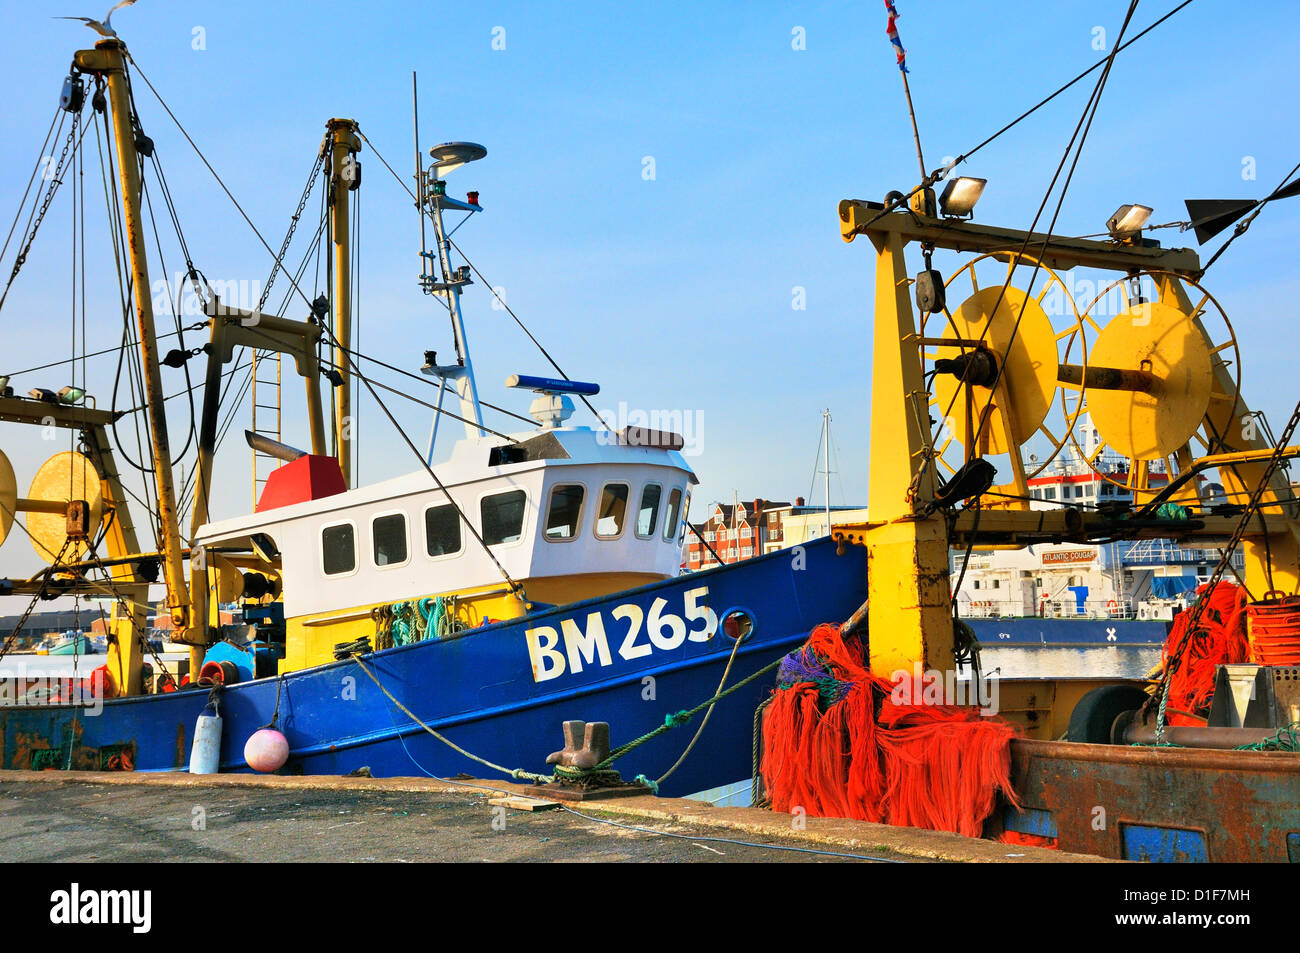 Les chalutiers de pêche, Shoreham, East Sussex, UK Banque D'Images